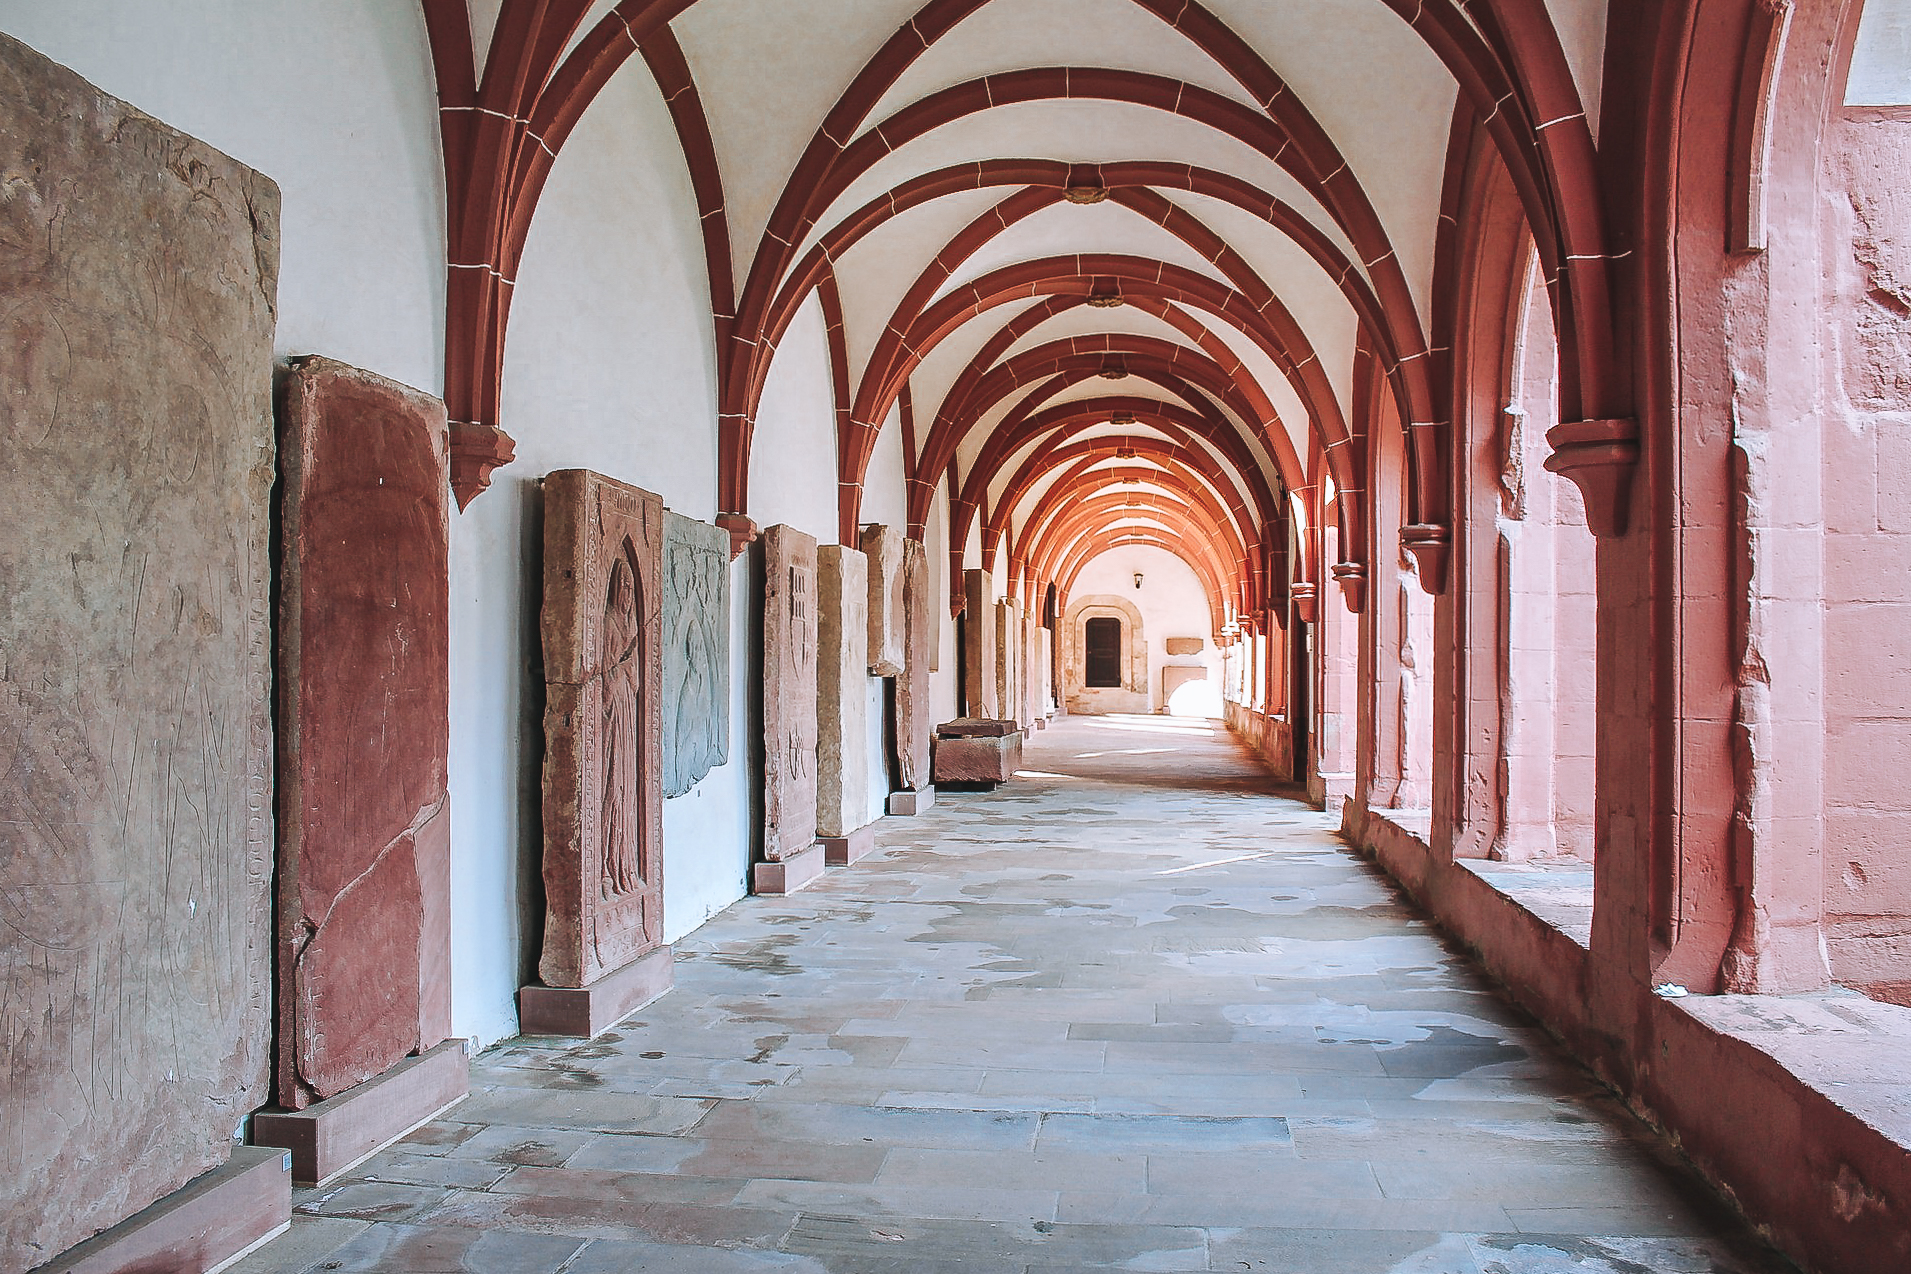 Kloster Eberbach in Hessen